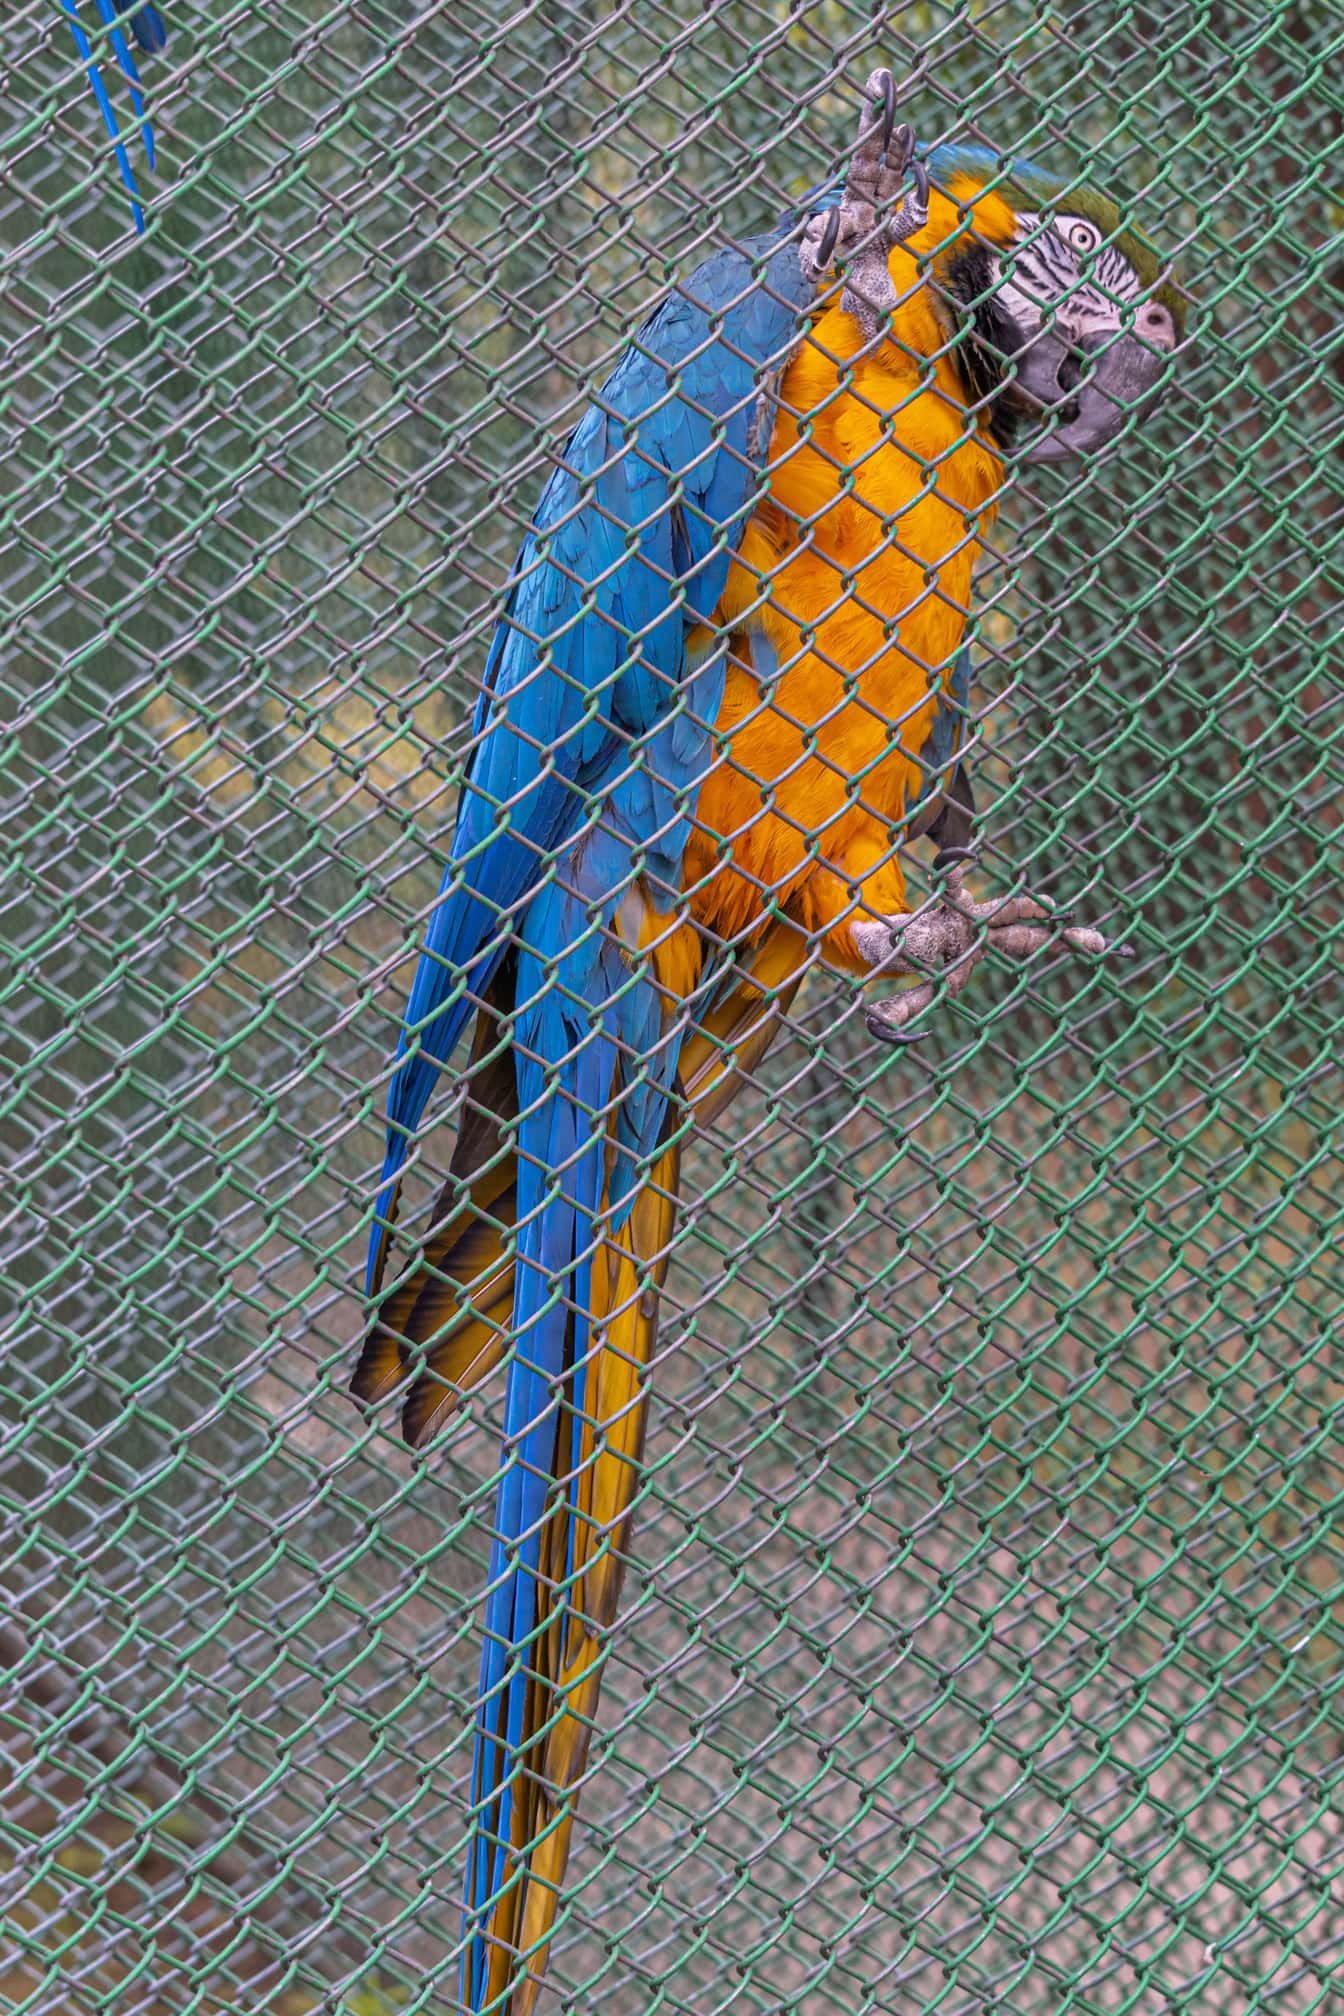 Kék-arany ara (Ara ararauna) papagájmadár ketrecben az állatkertben